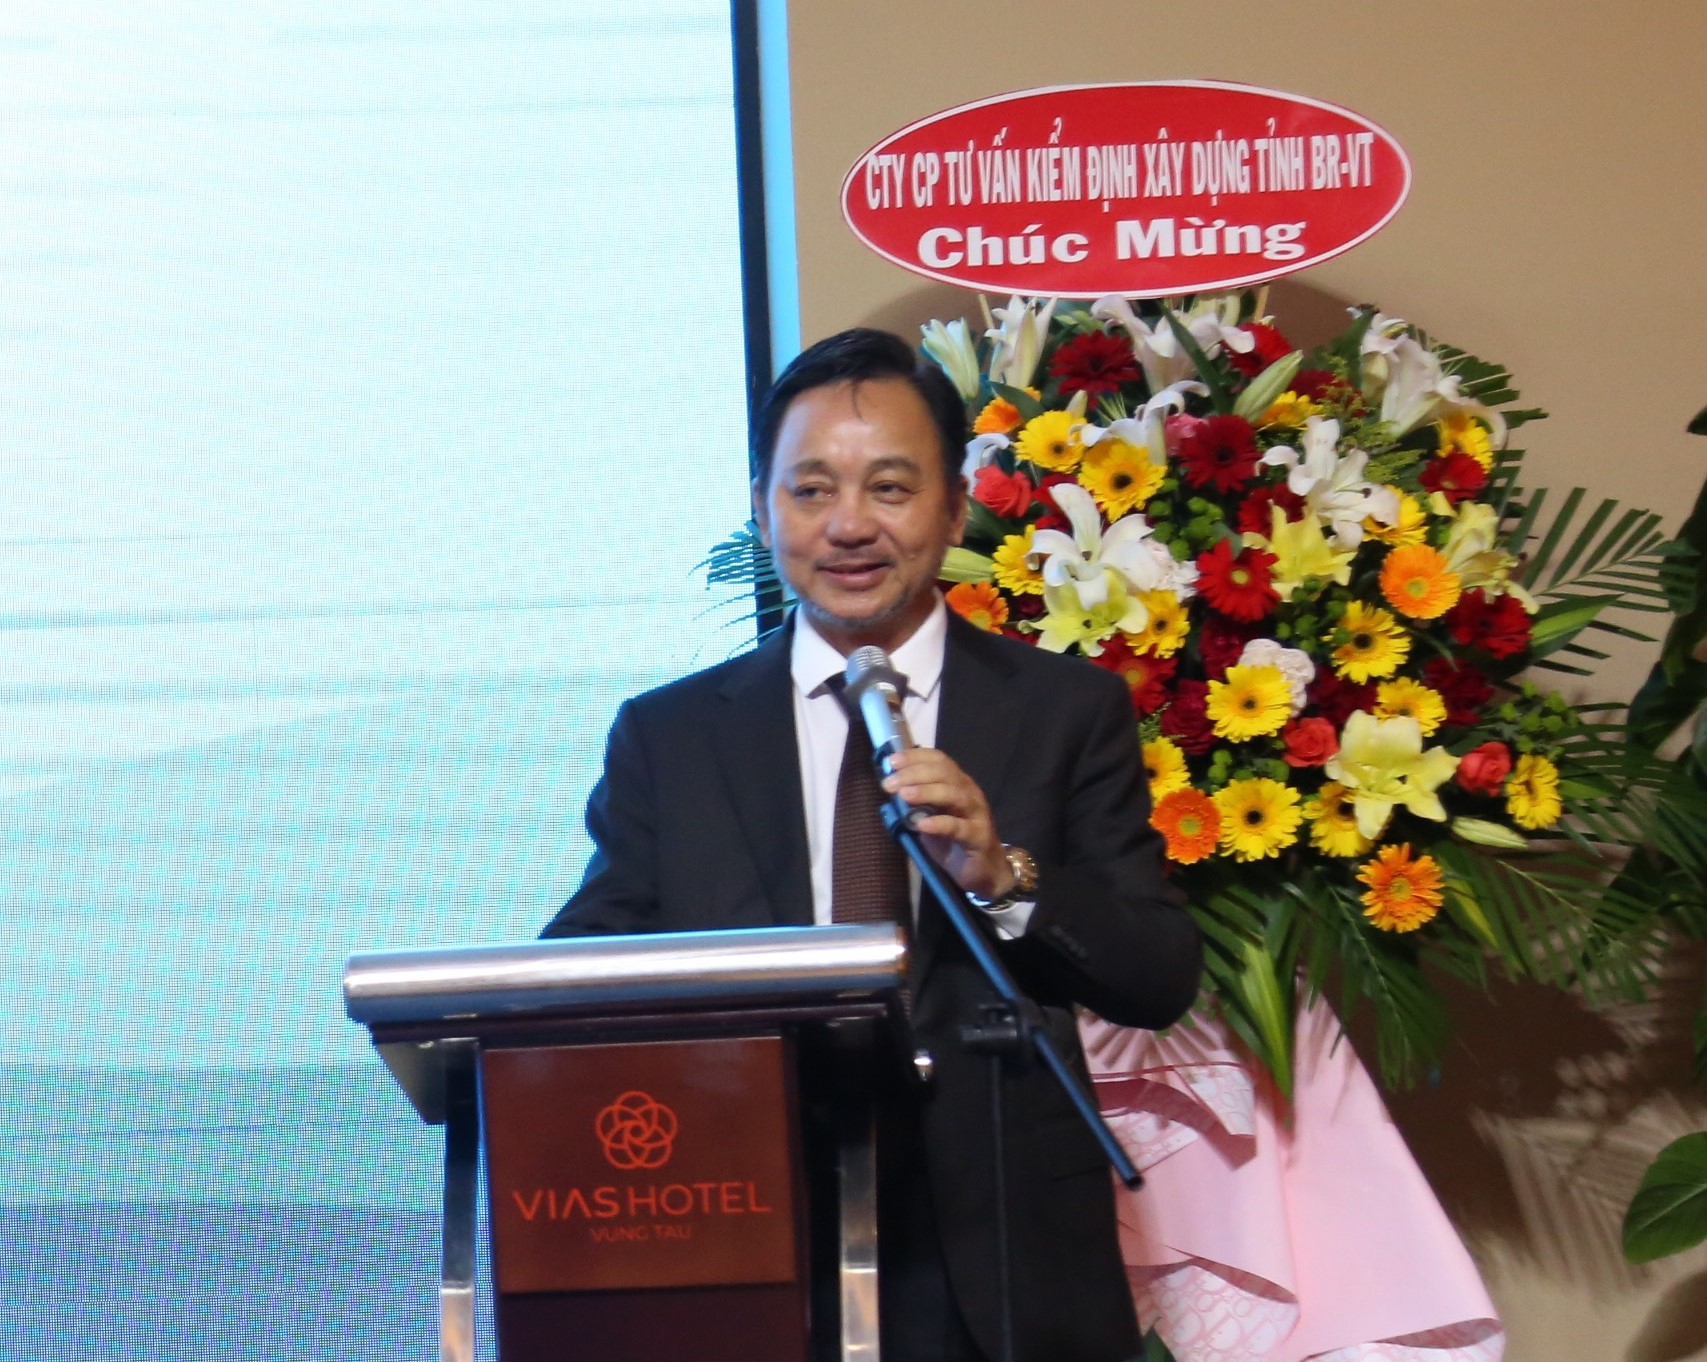 Ông Phạm Văn Triêm - Chủ tịch Hiệp hội Doanh nghiệp nhỏ và vừa tỉnh Bà Rịa - Vũng Tàu phát biểu tại buổi lễ